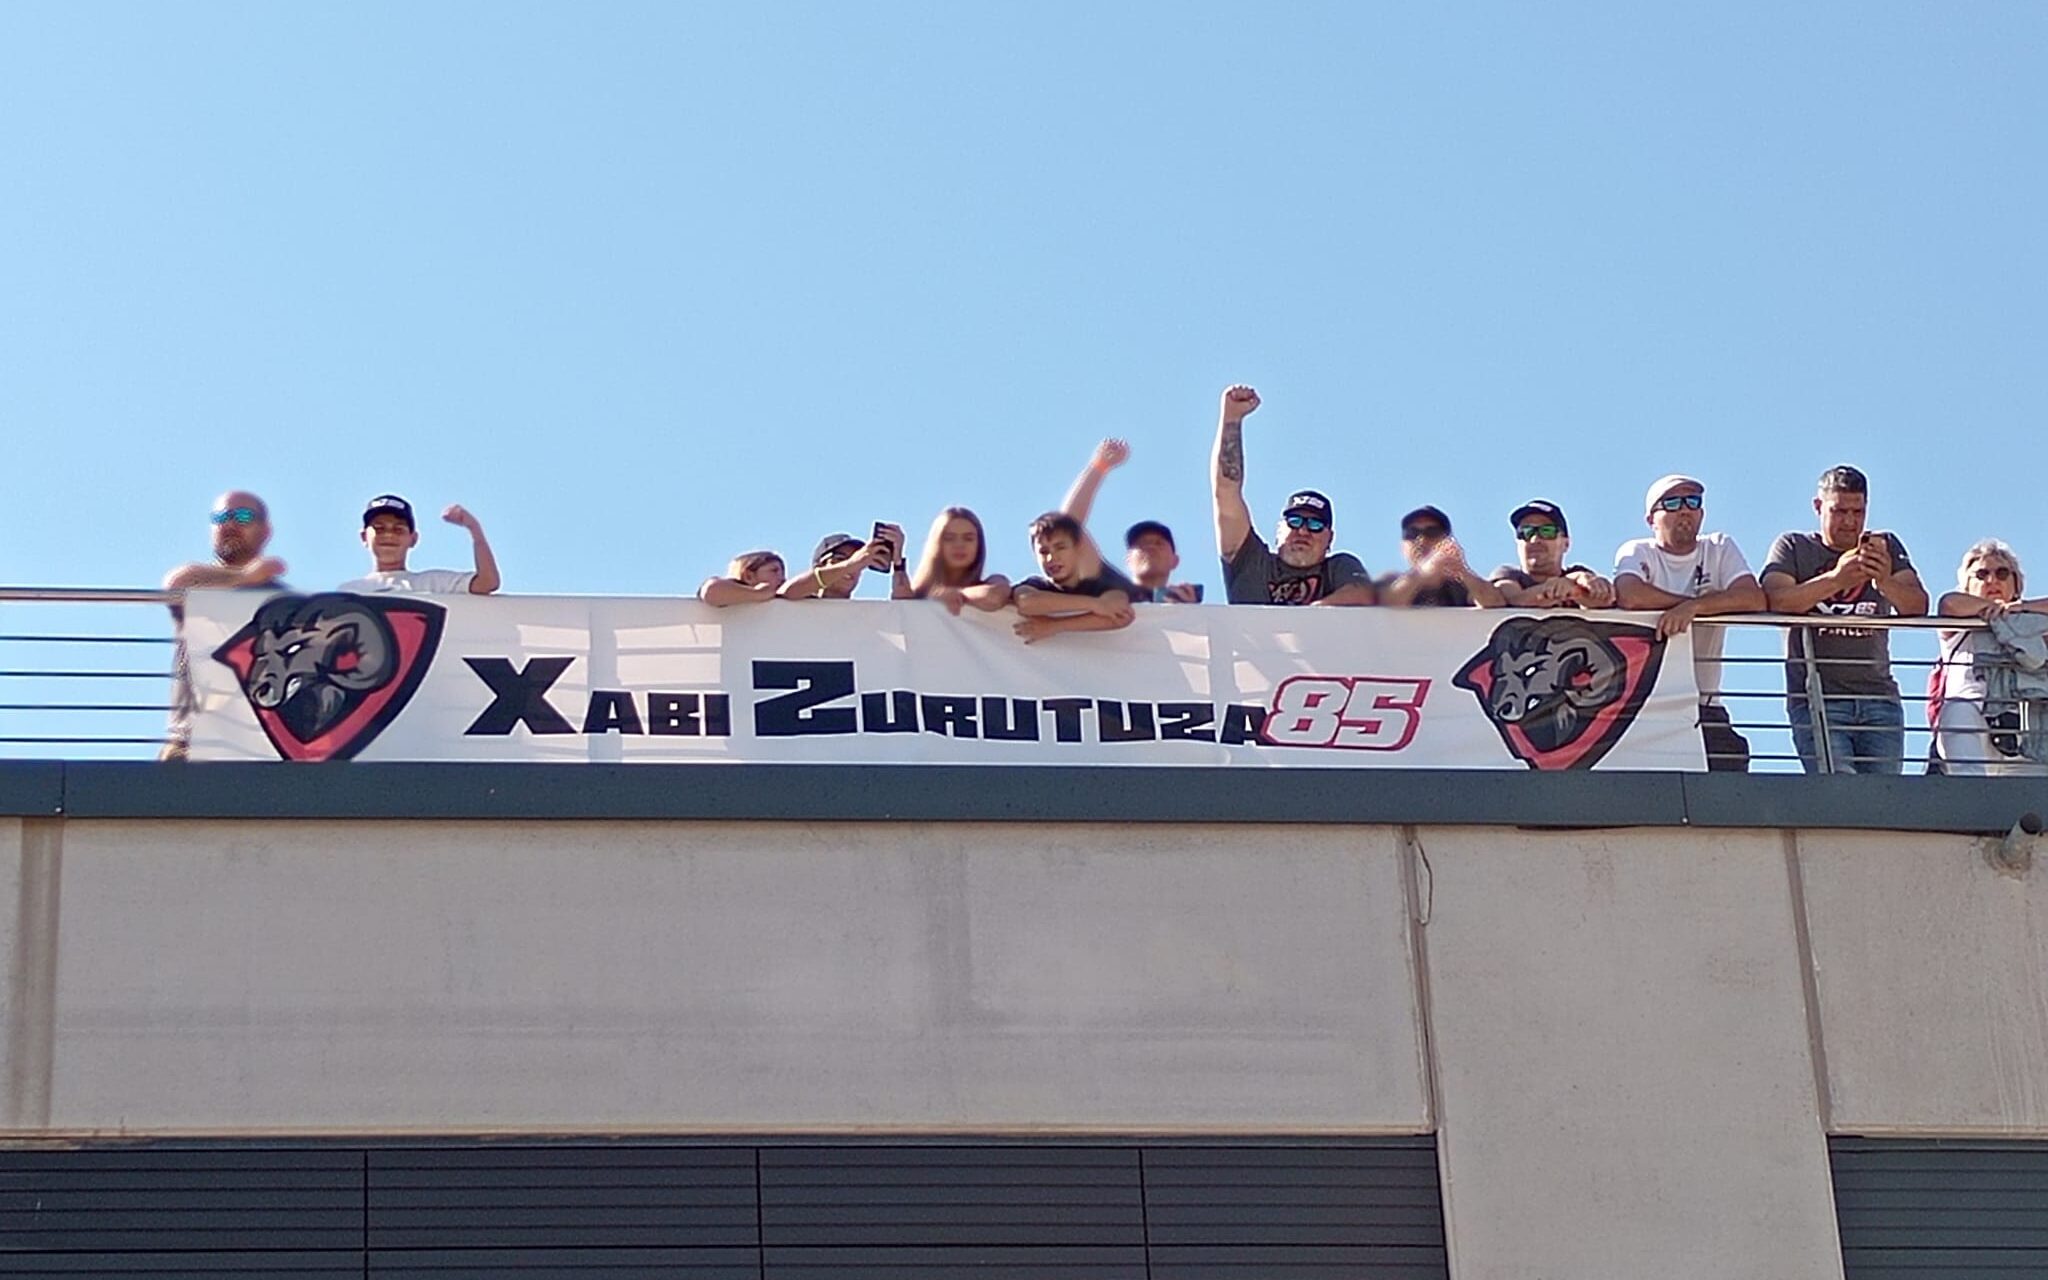 El Club de Fans de Xabi Zurutuza se hizo notar en la grada del Circuito Motorland Aragón